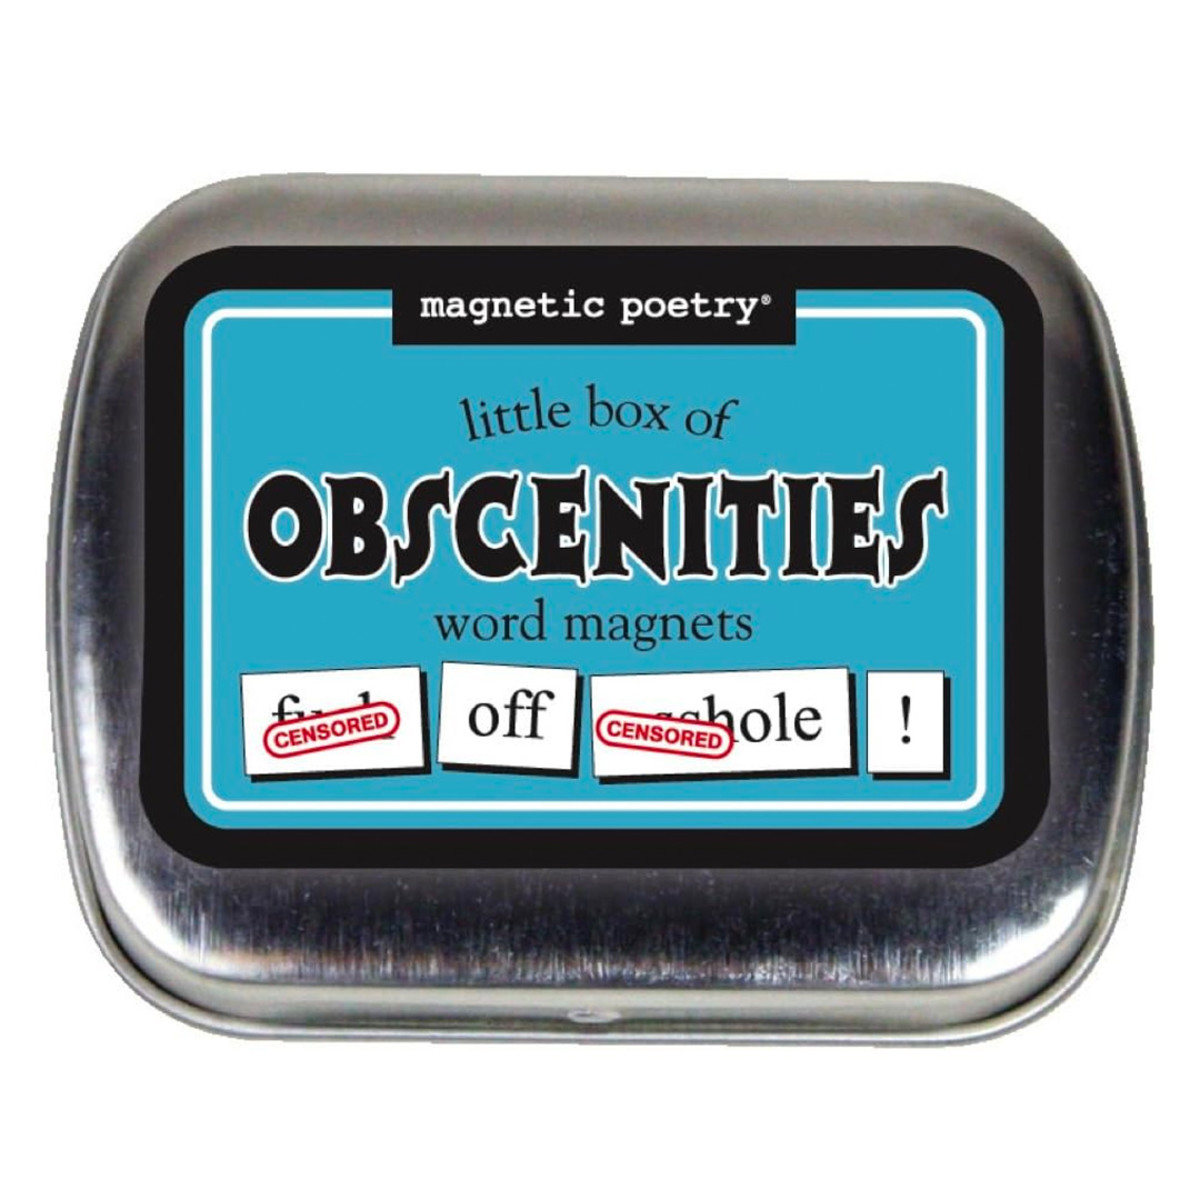 https://www.mensjournal.com/.image/t_share/MjAxOTExMjM1Mjk3MDkzNDEw/magnetic-poetry---little-box-of-obscenities-kit.jpg